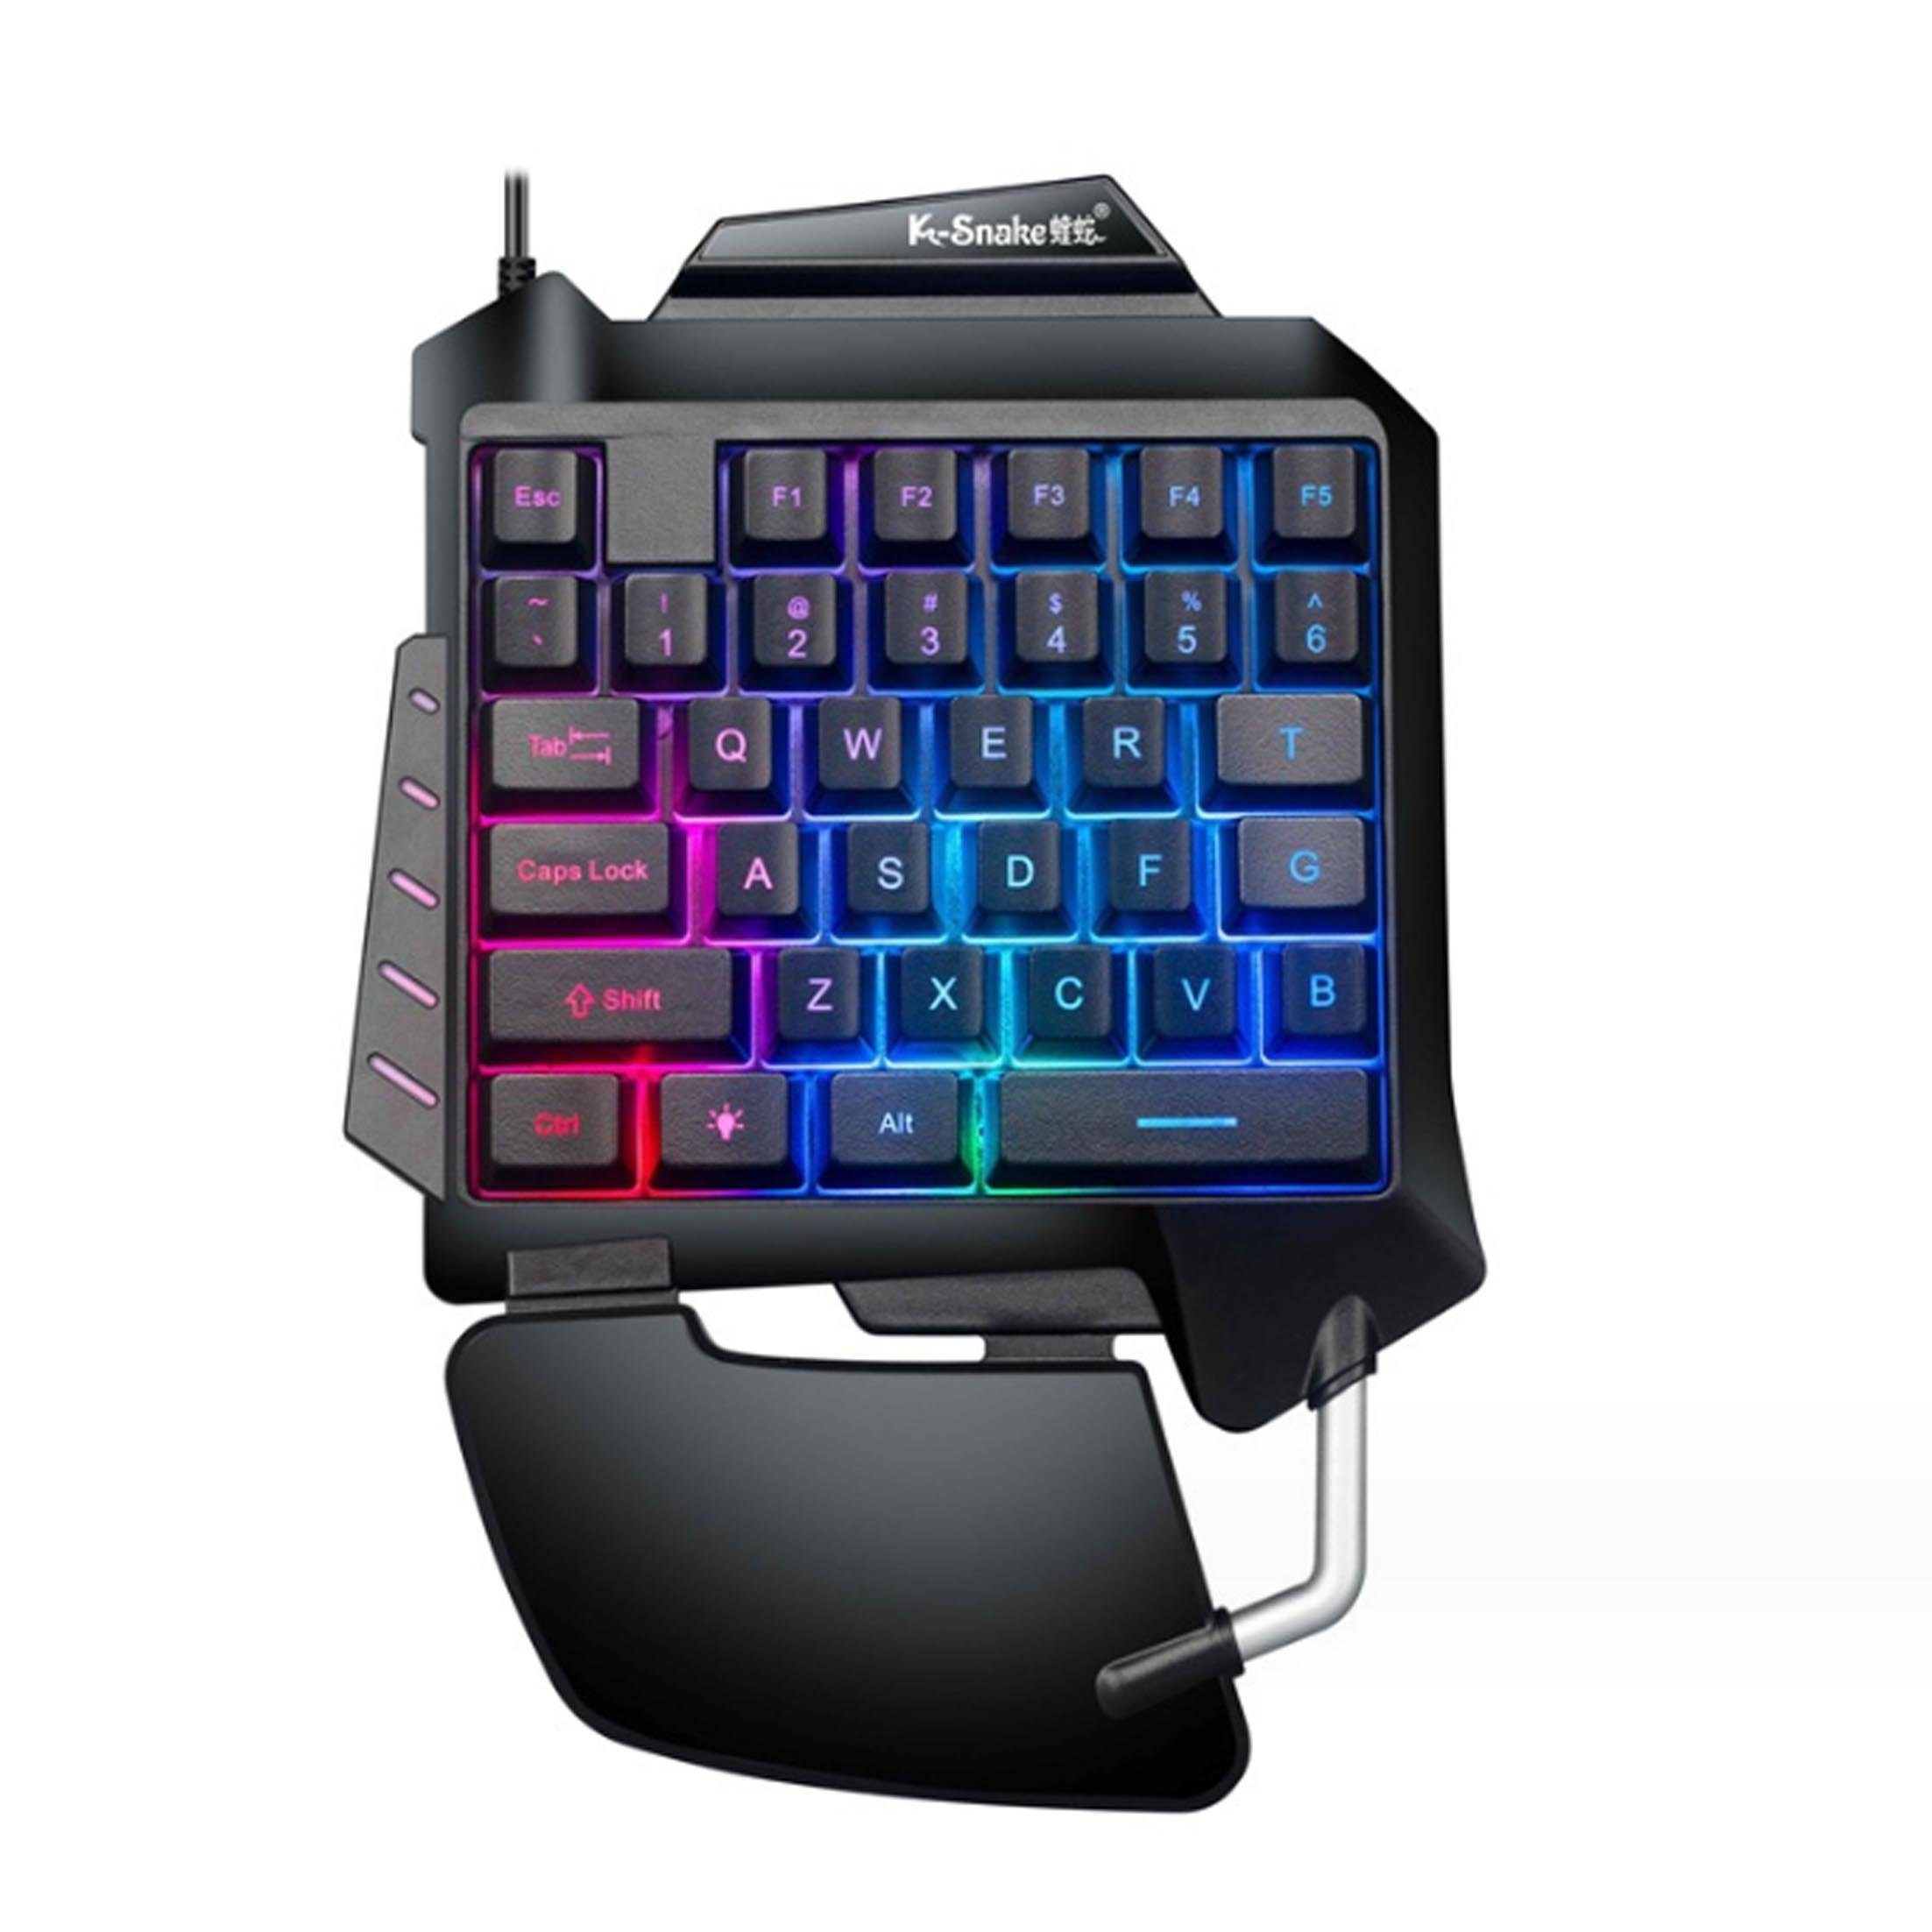 Diida Tastatur, Gaming-Tastatur,Einhändig bedienbare Tastatur Tastatur (Bequeme Handauflage, ergonomisches Design, verschiedene Lichteffekte)